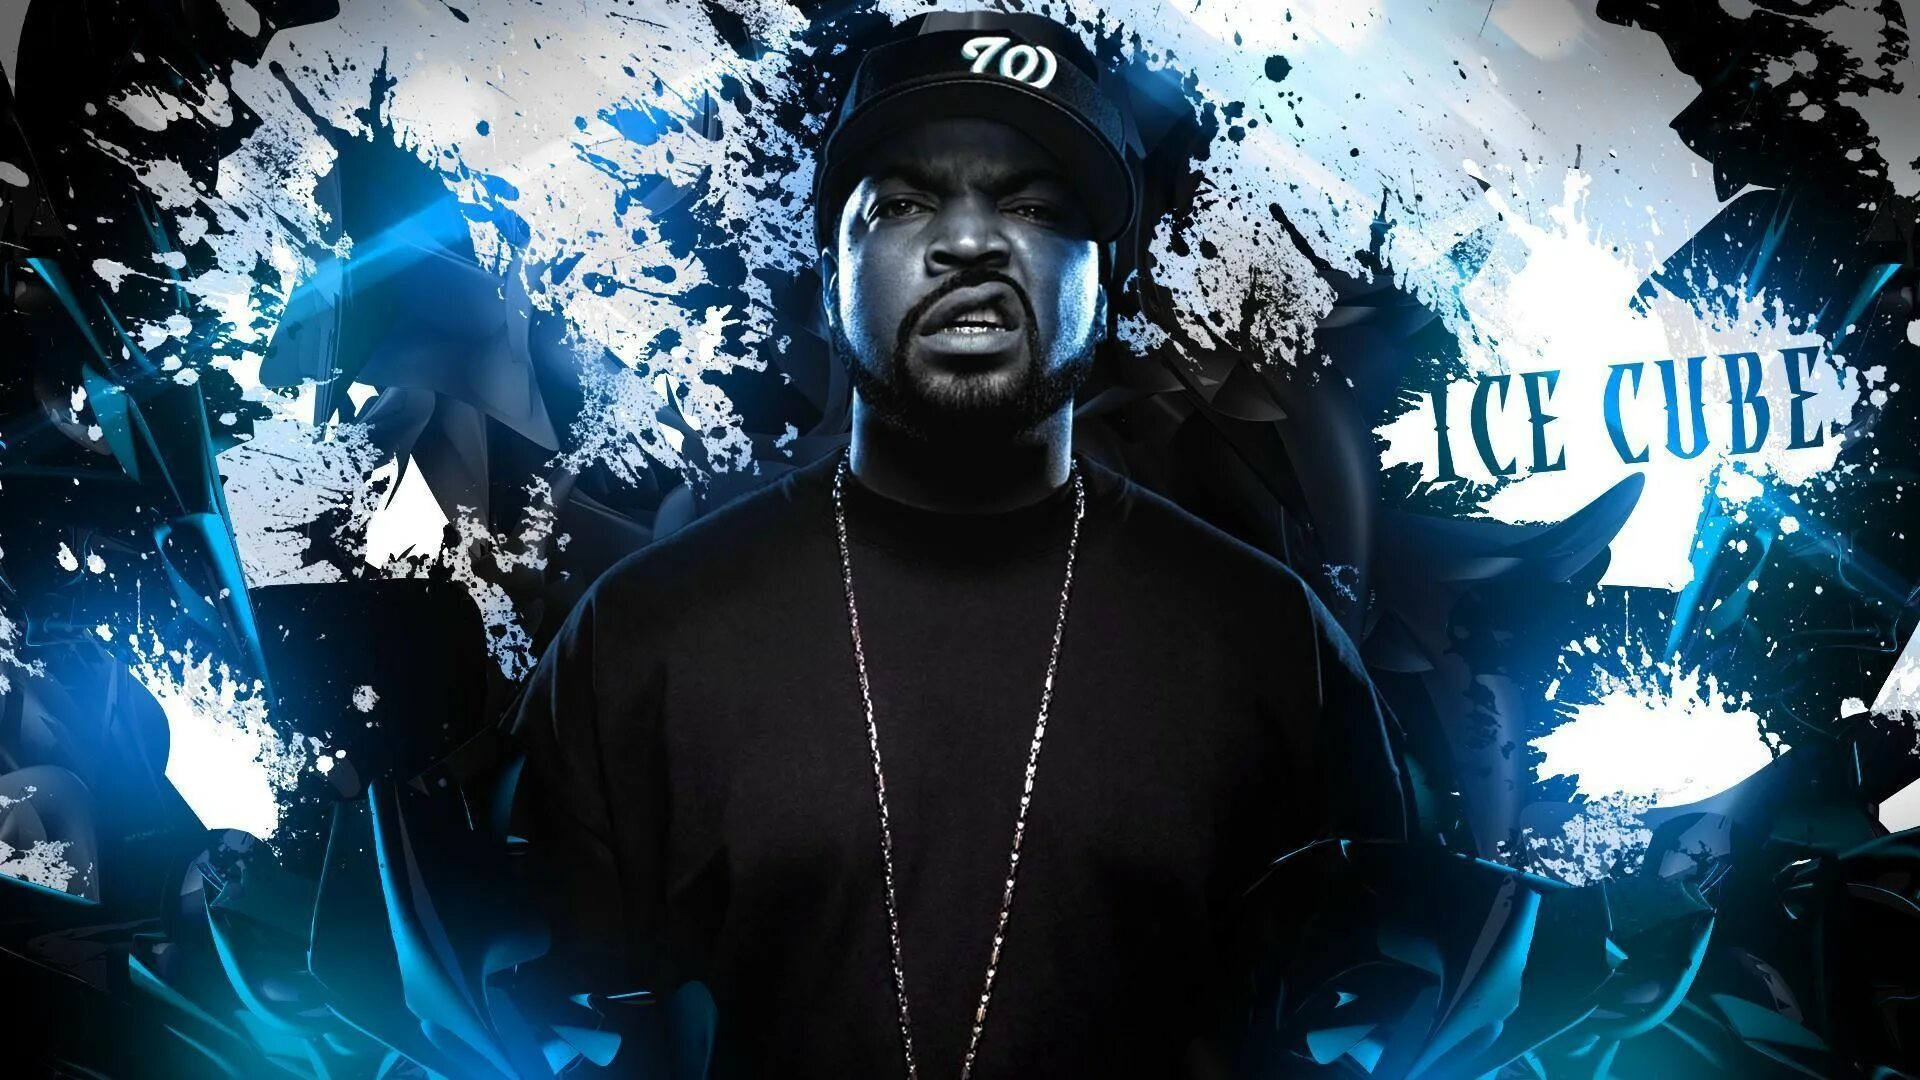 Ice cube remix. Ice Cube рэпер. Ice Cube 2pac. Айс Кьюб гангста рэп. Ice Cube гангста-РЭПЕРЫ.